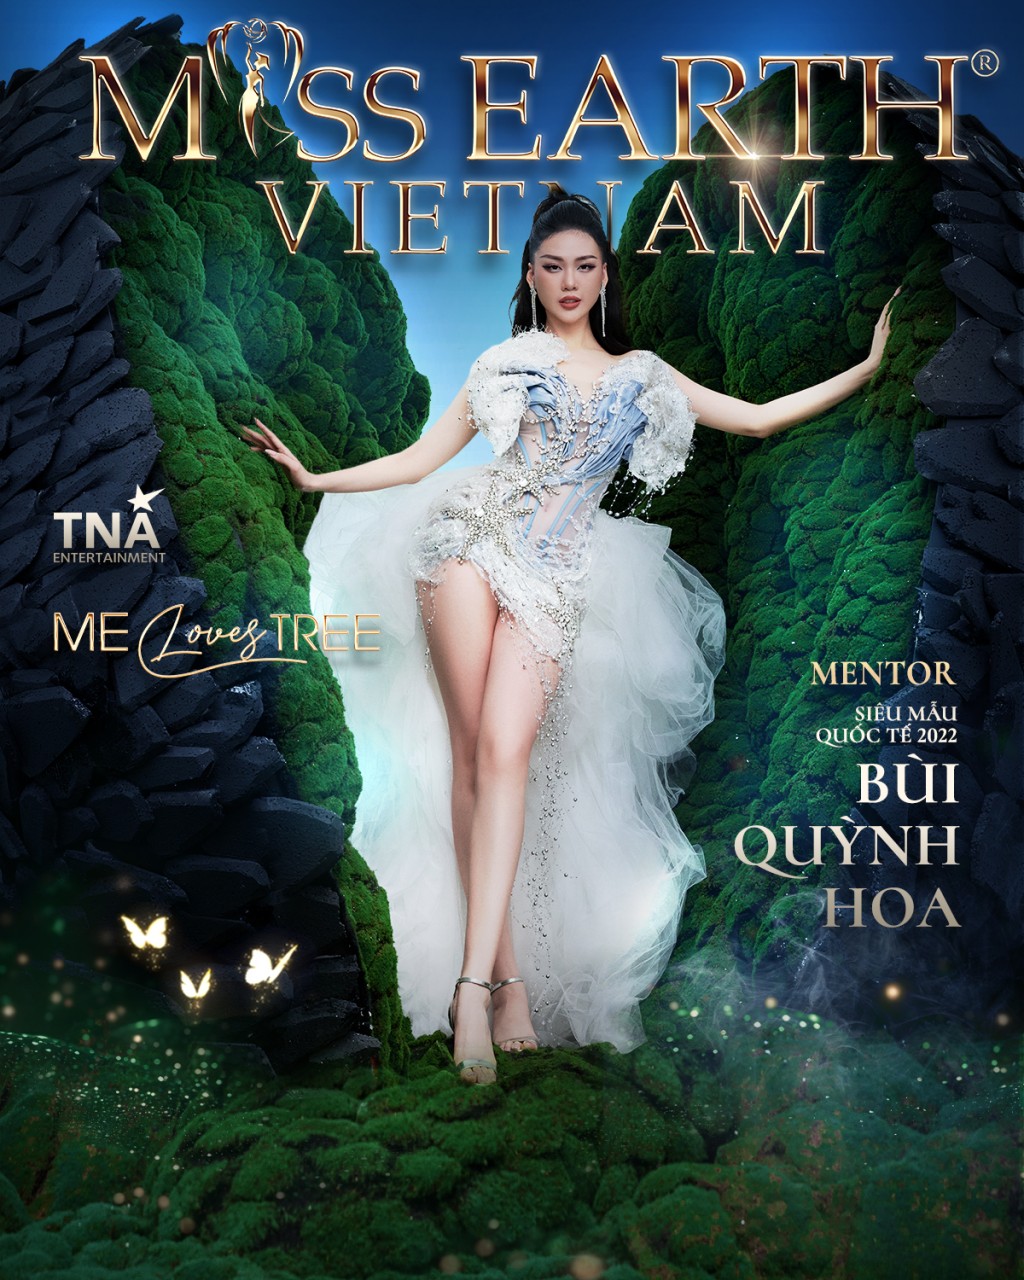 Miss Earth Việt Nam 2023 tung bộ poster với chủ đề “Me loves tree”